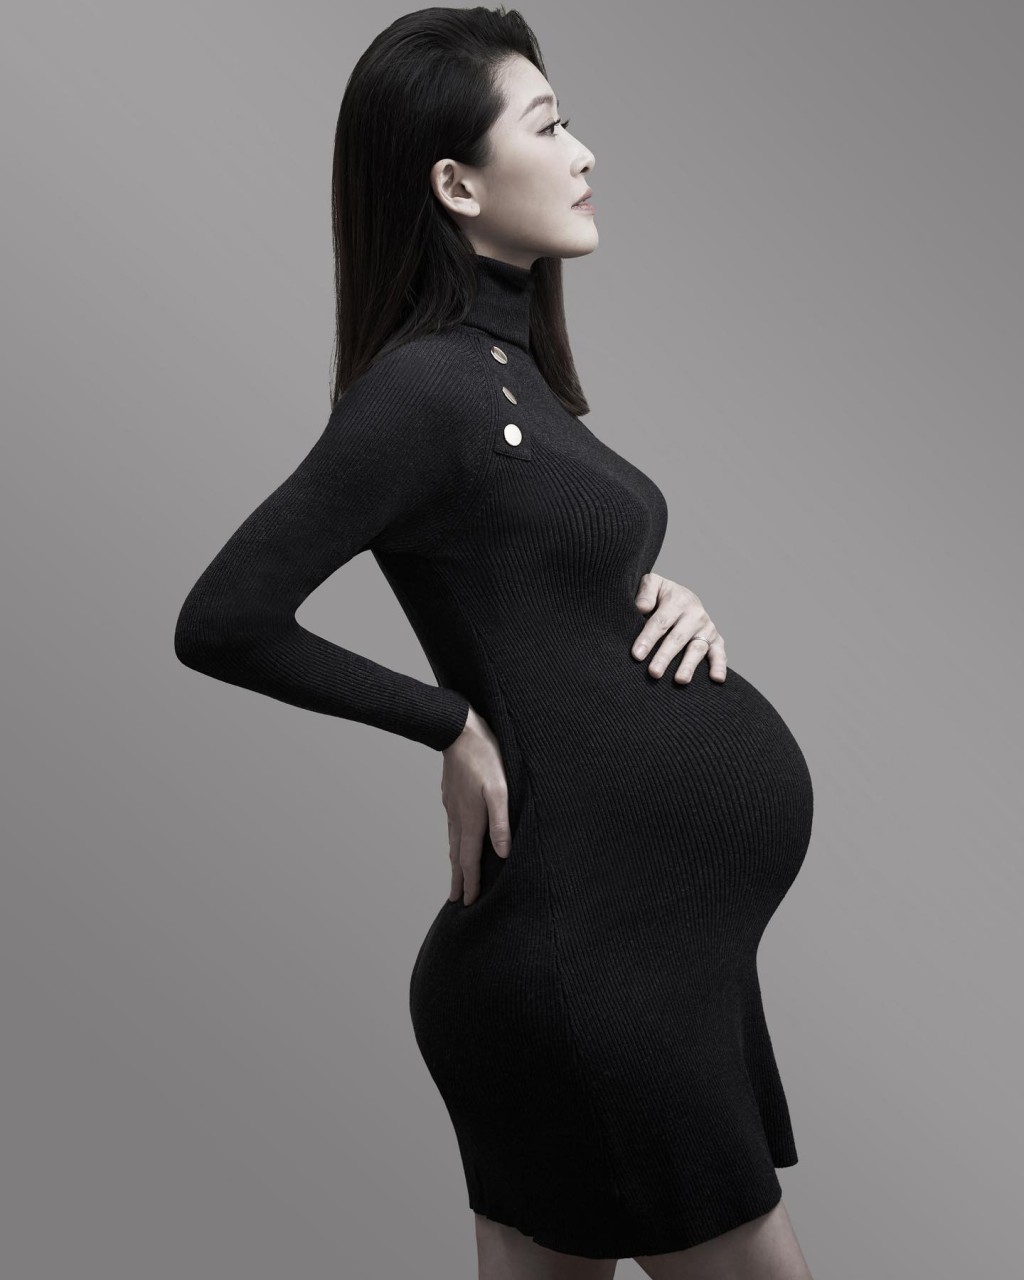 周励淇2020年1月于社交平台宣布怀孕。